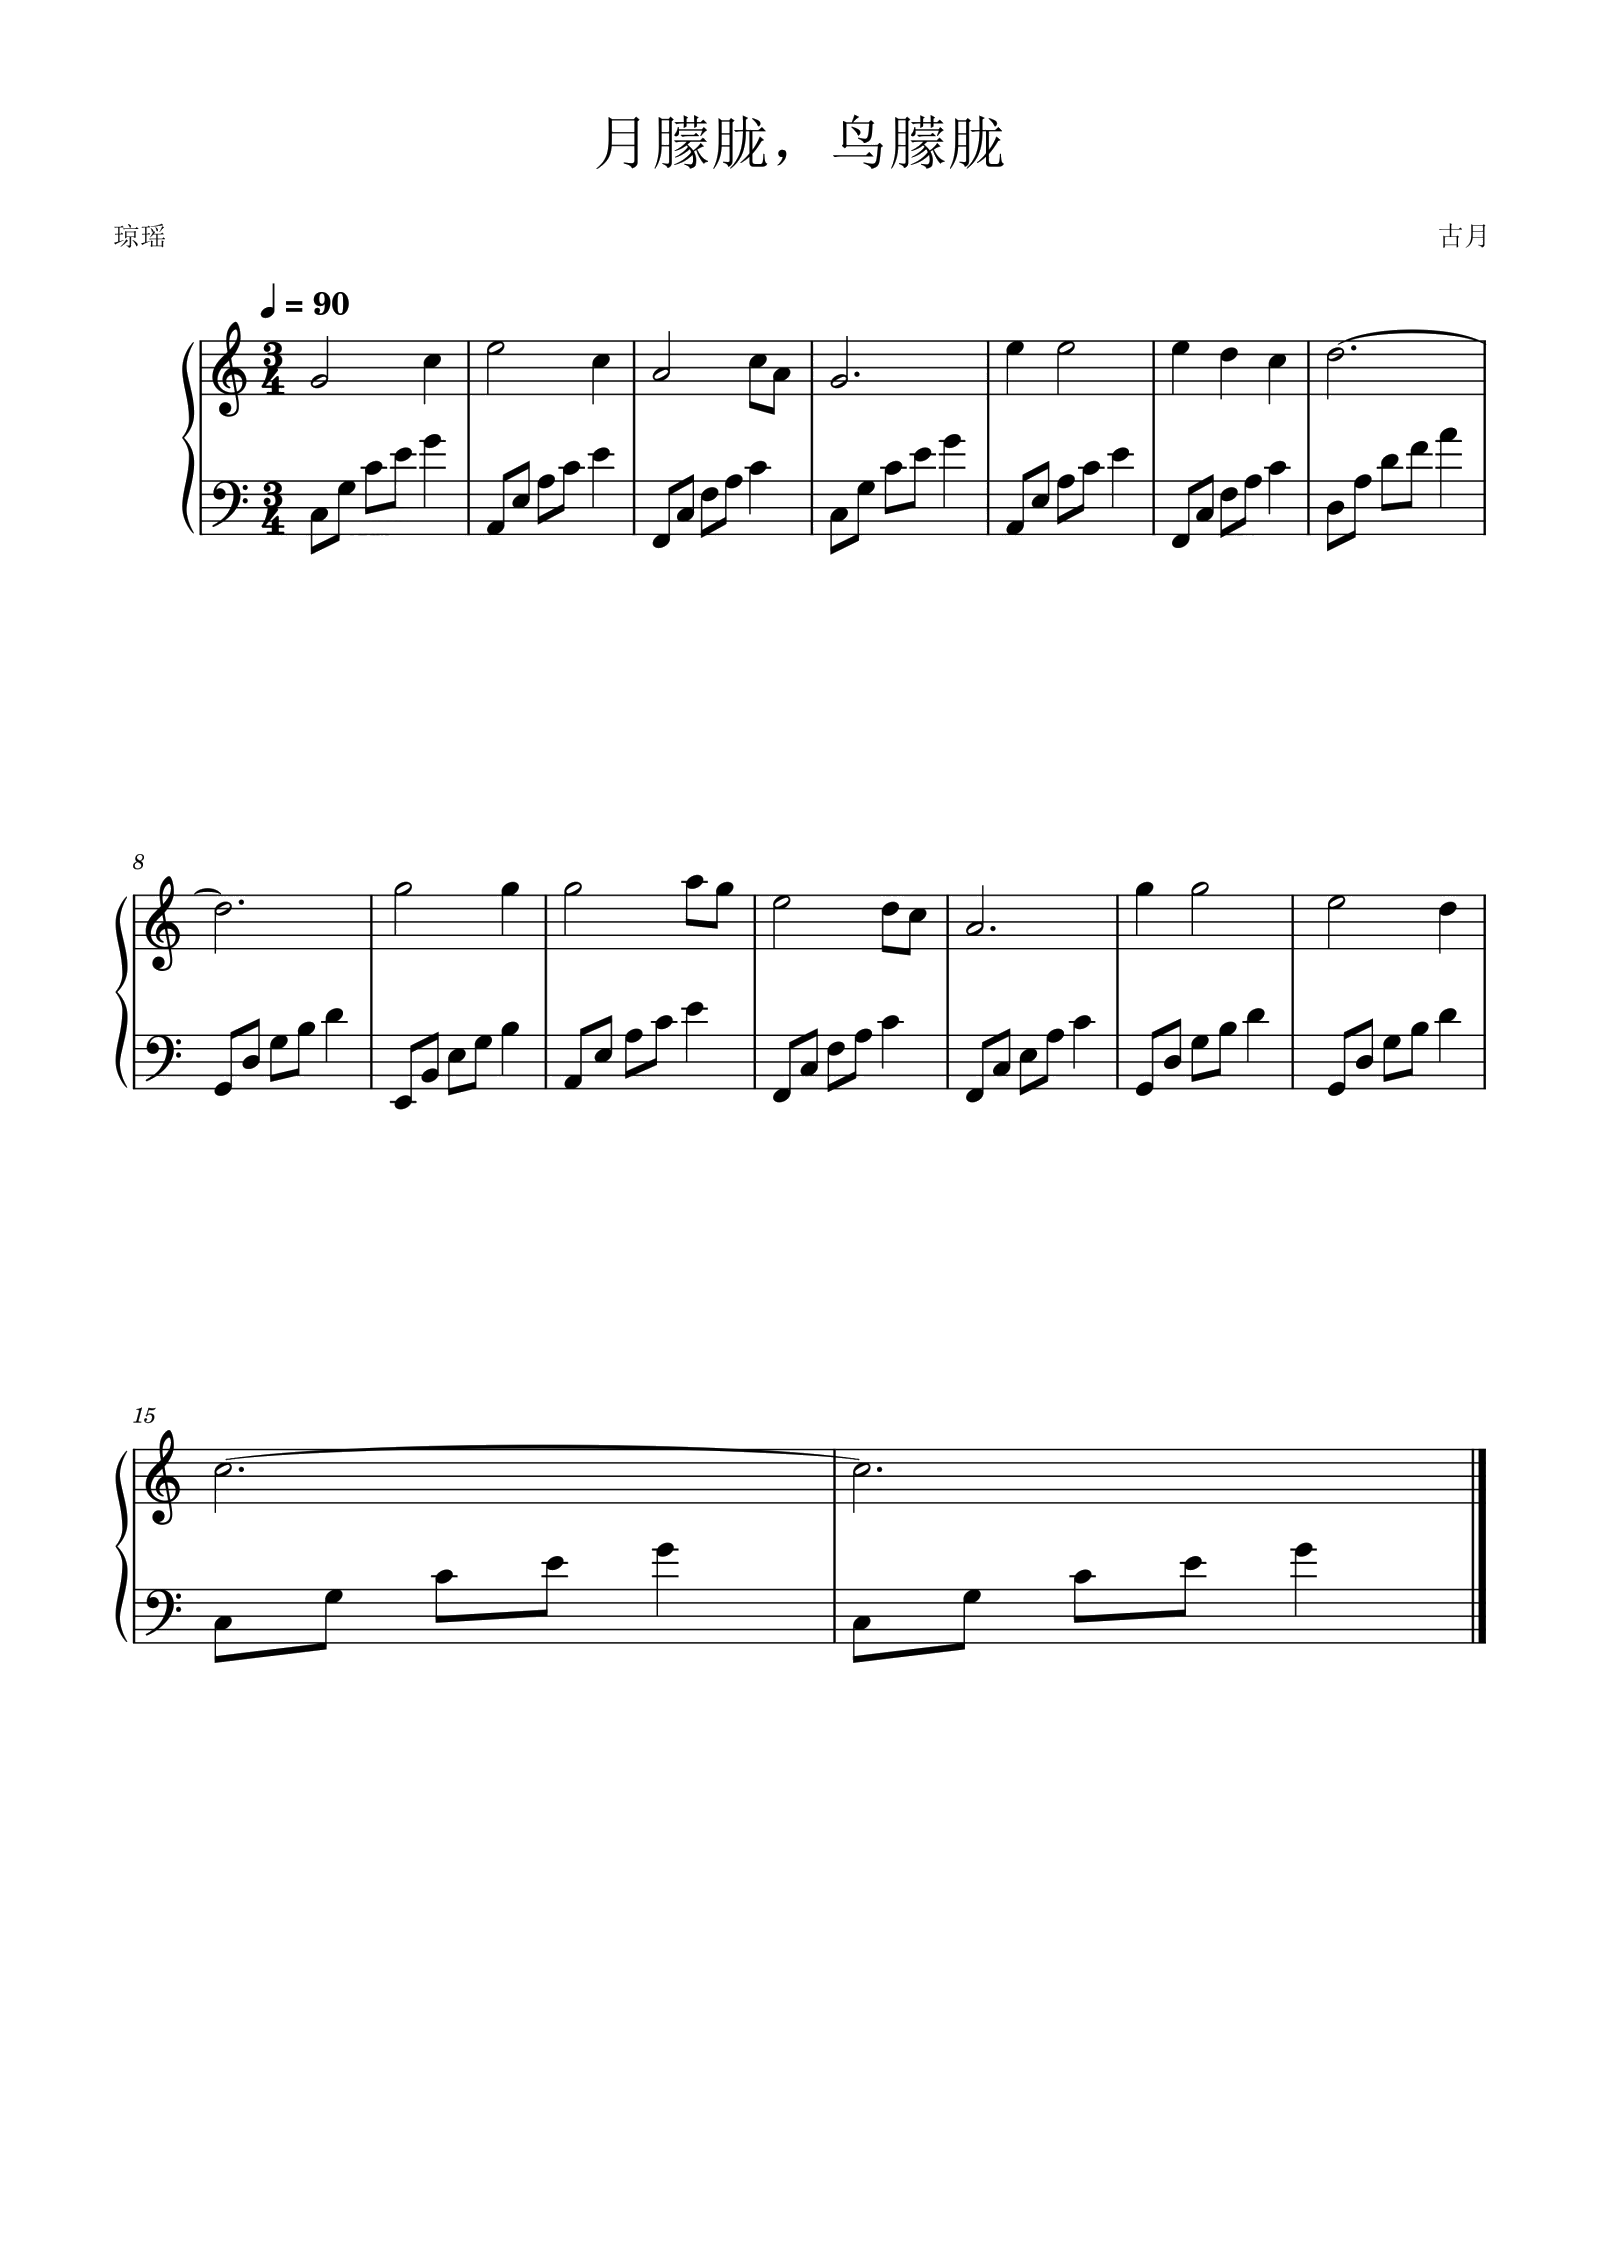 电子琴乐谱《月朦胧 鸟朦胧》简谱五线谱对照配和弦-电子琴谱 - 乐器学习网